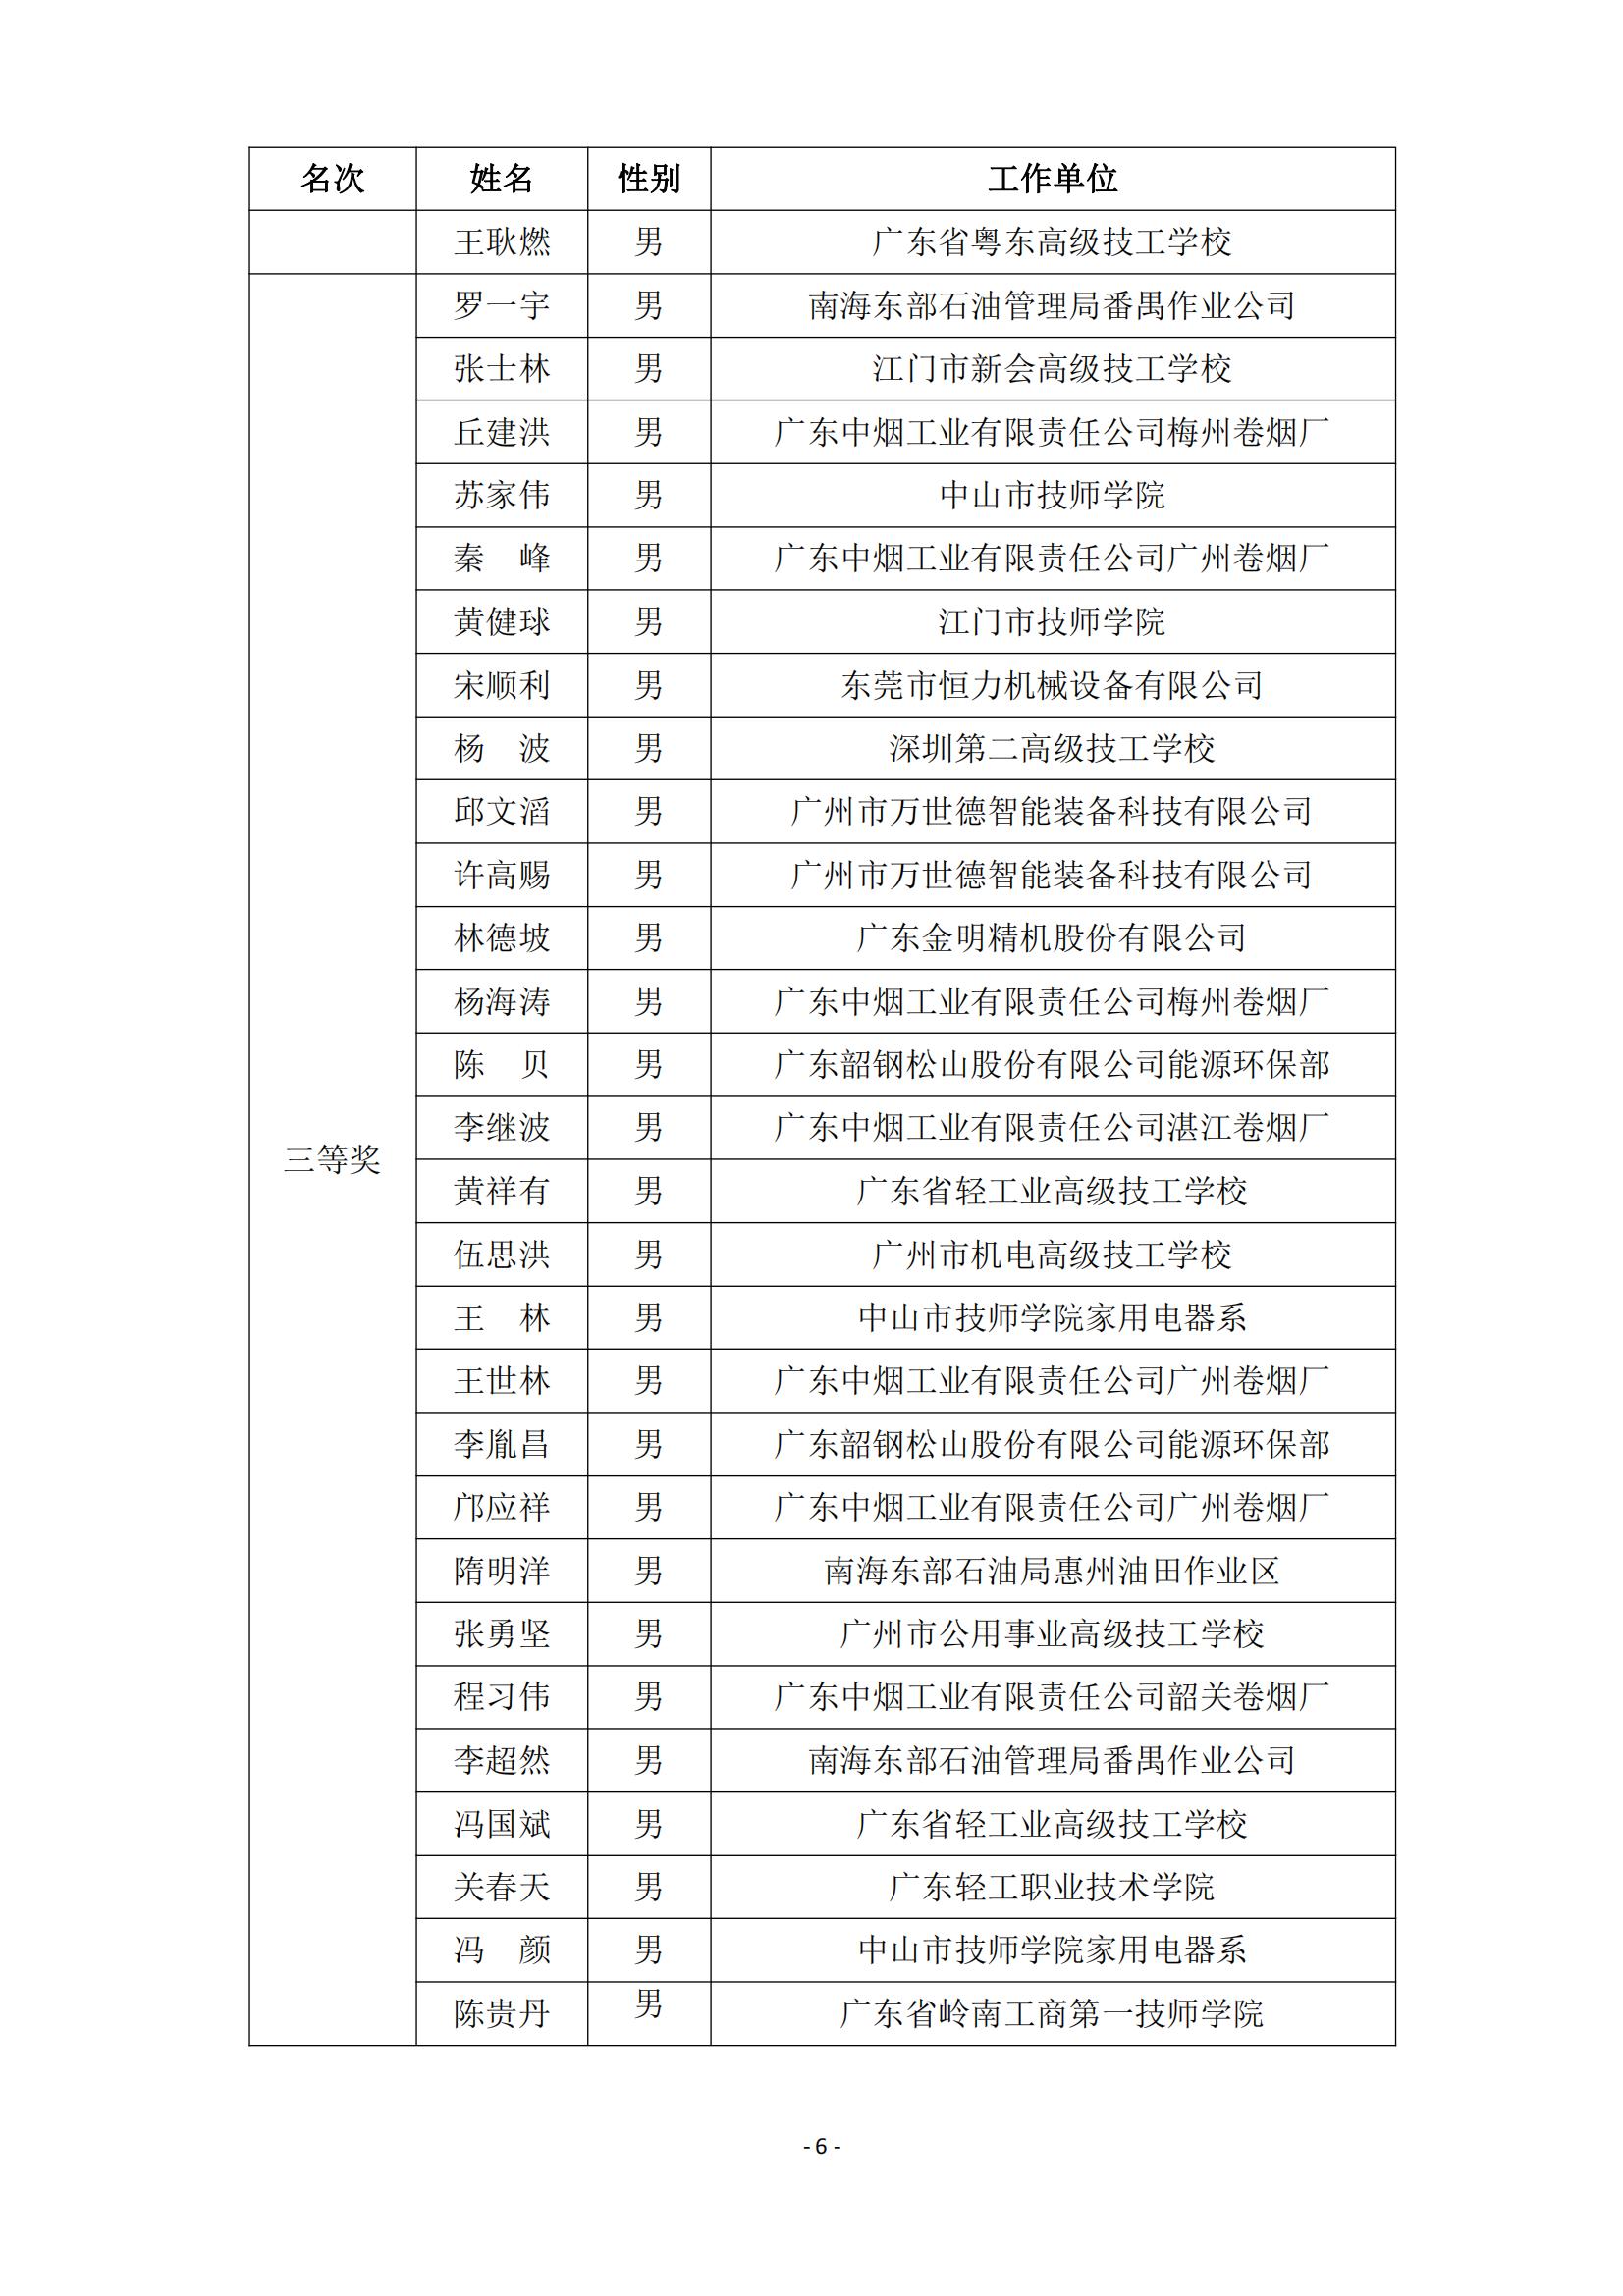 2015 年中国技能大赛--广东省机电一体化职业技能竞赛_05.jpg